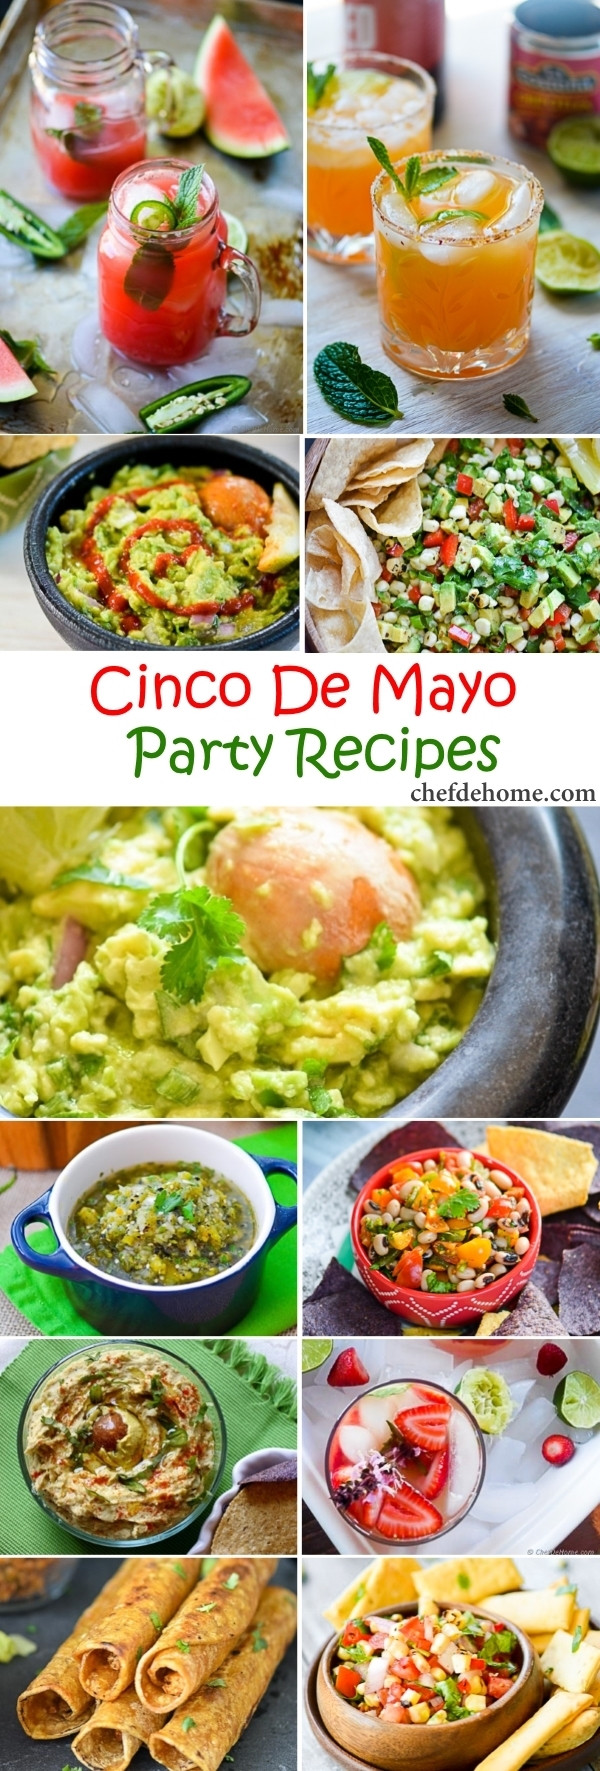 Cinco De Mayo Party Food Ideas
 Easy Mexican Fiesta Cinco De Mayo Party Recipes Meals